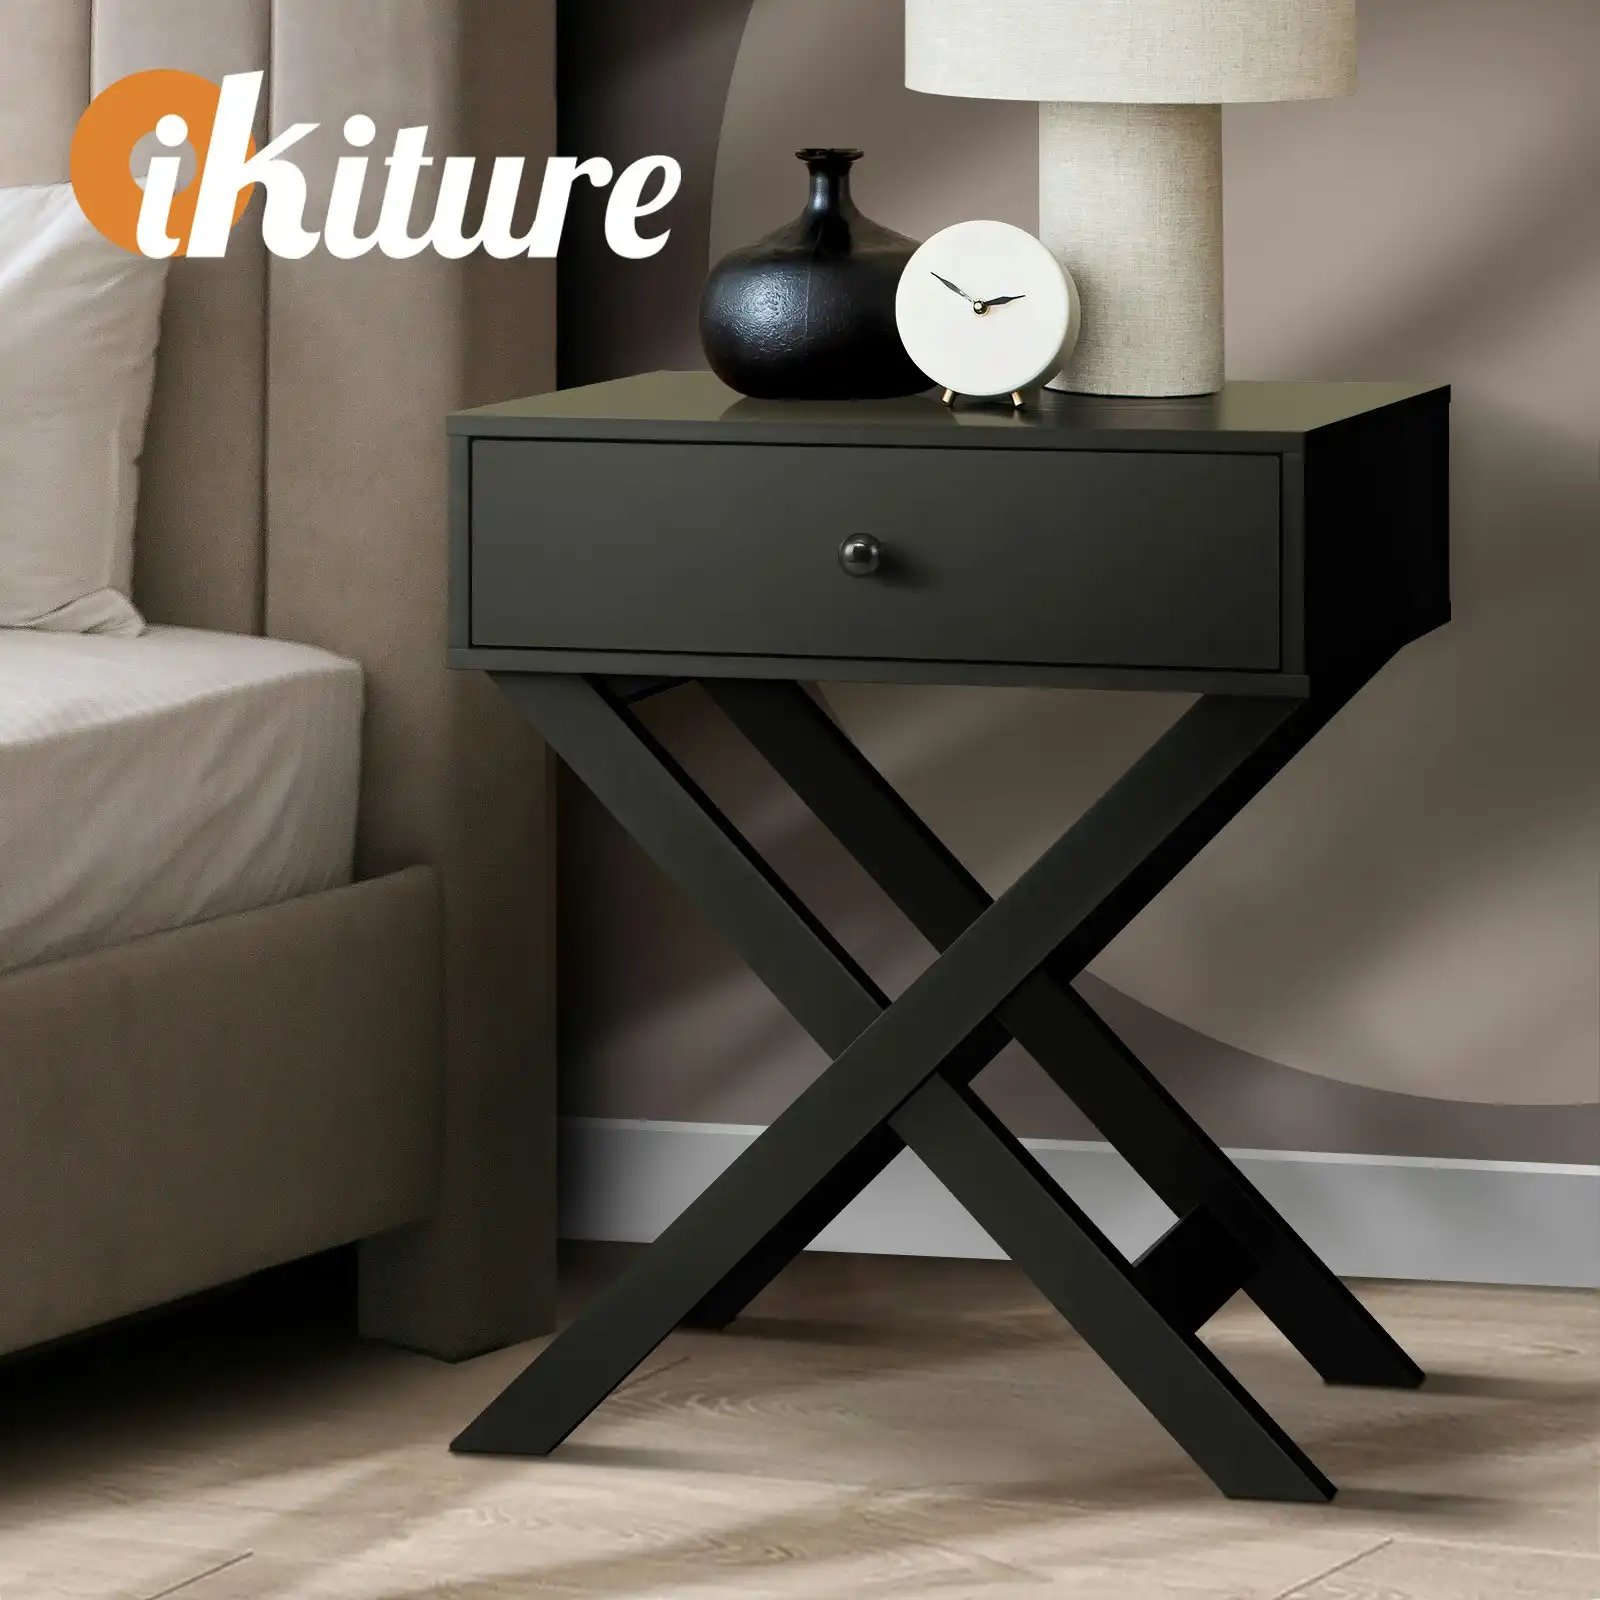 Oikiture Bedside Table Drawer Side Table Black Bedroom Storage Cabinet Furniture